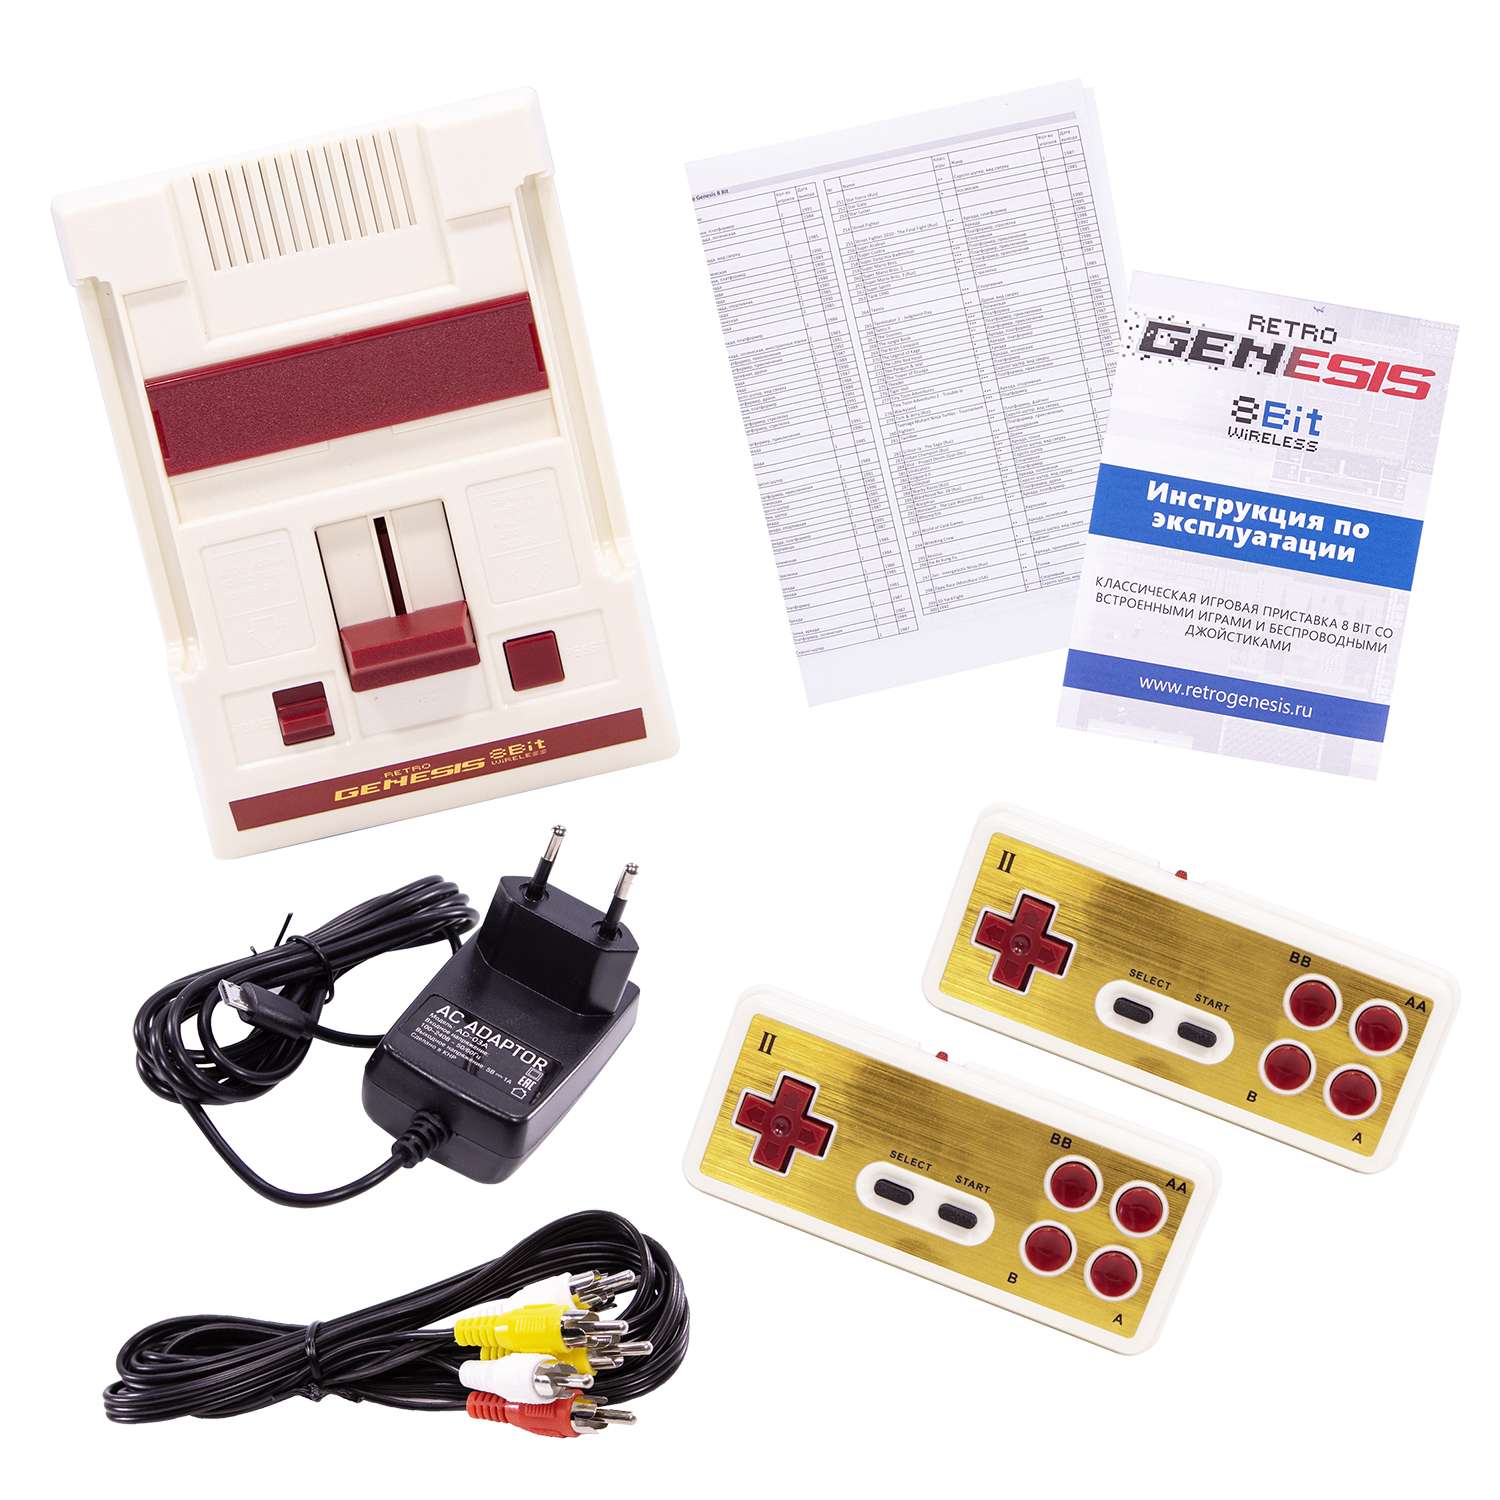 Игровая приставка для детей Retro Genesis 8 Bit Wireless + 300 игр / AV кабель / 2 беспроводных джойстика - фото 2